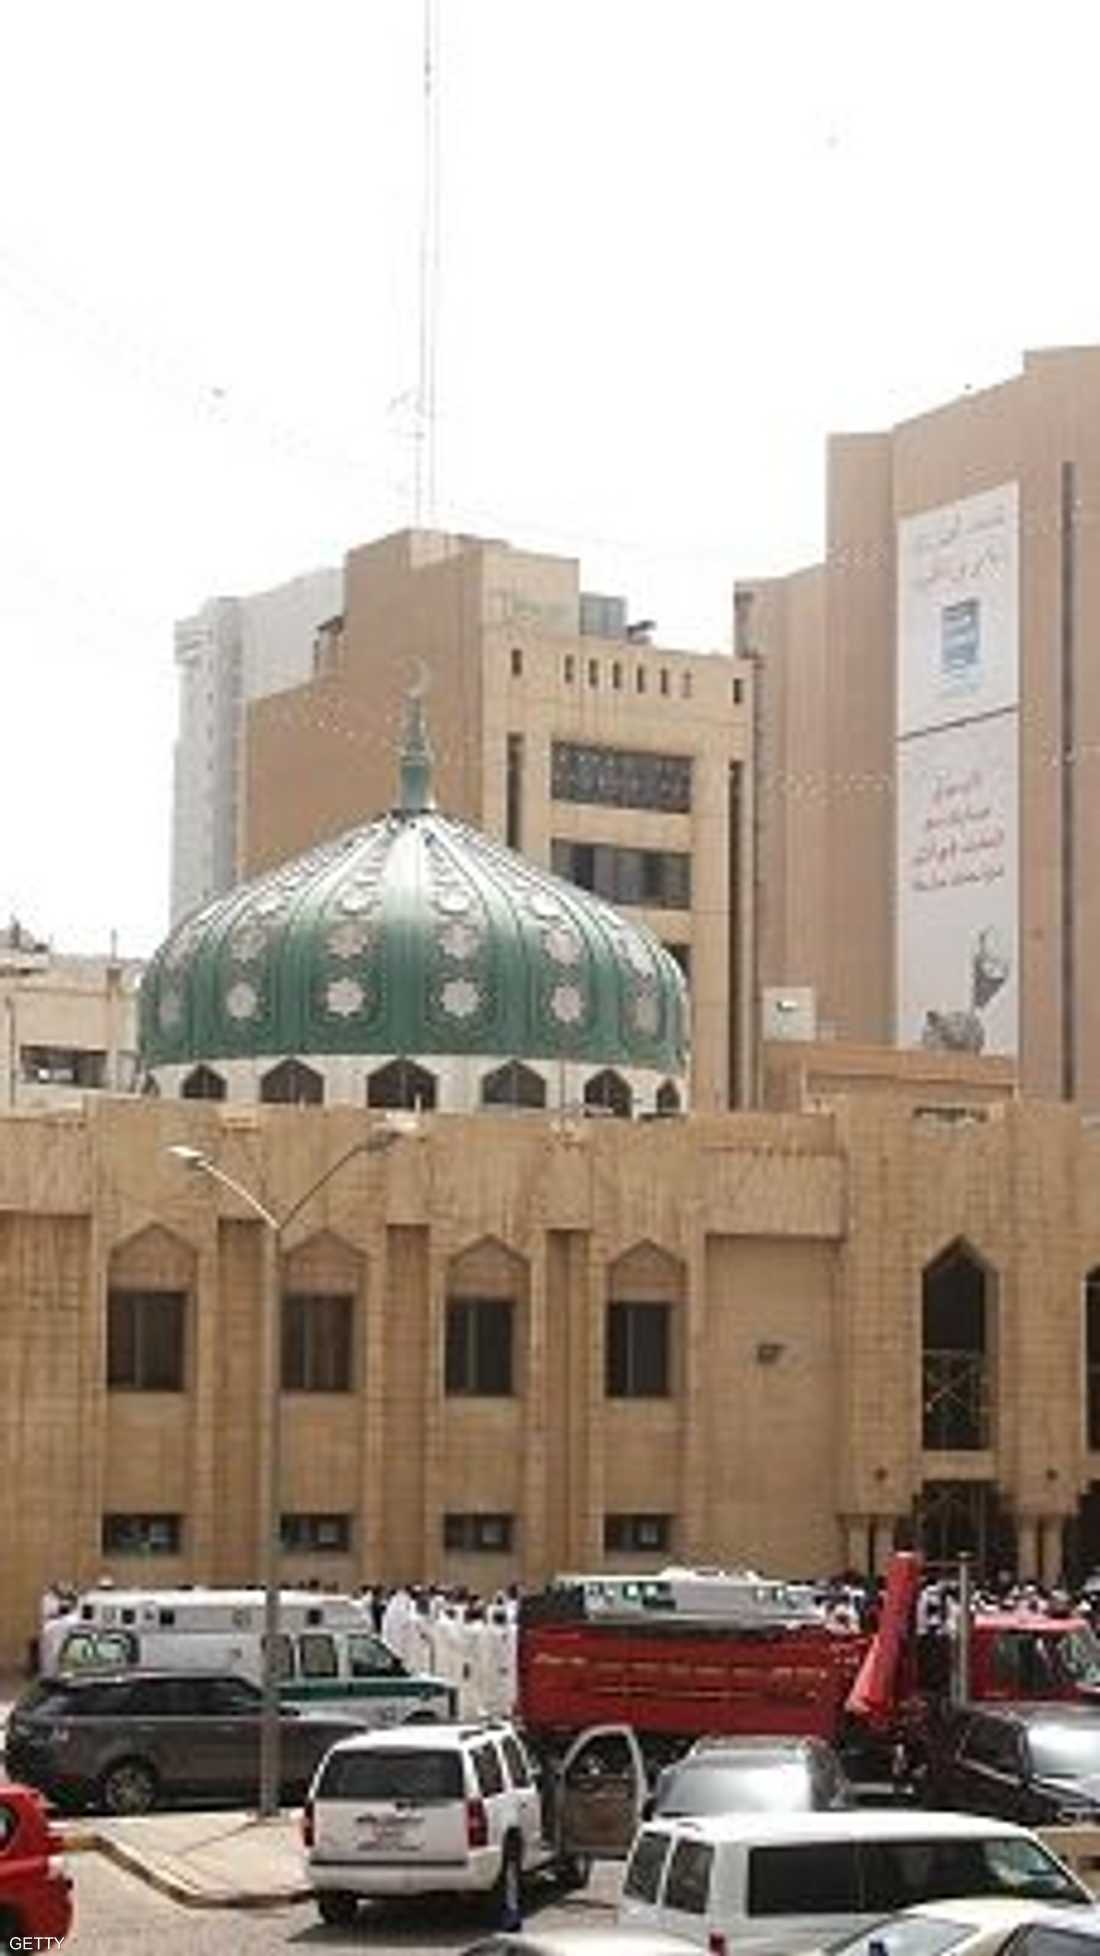  التفجير استهدف مسجد الإمام الصادق في الكويت